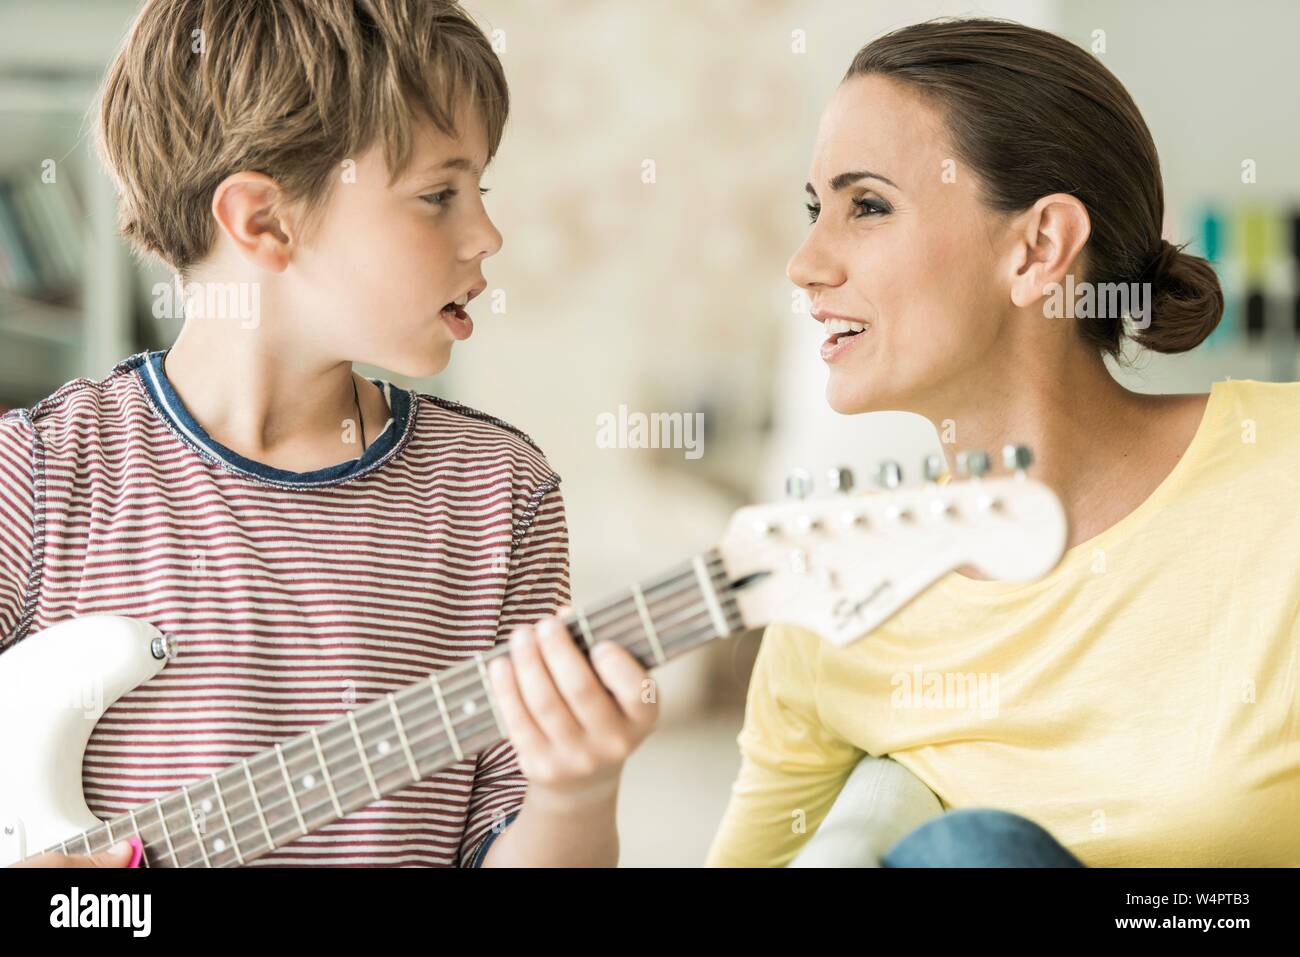 Mutter und Sohn gemeinsam Musik machen, beide singen und Sohn spielen, E-Gitarre, Nahaufnahme, Deutschland Stockfoto